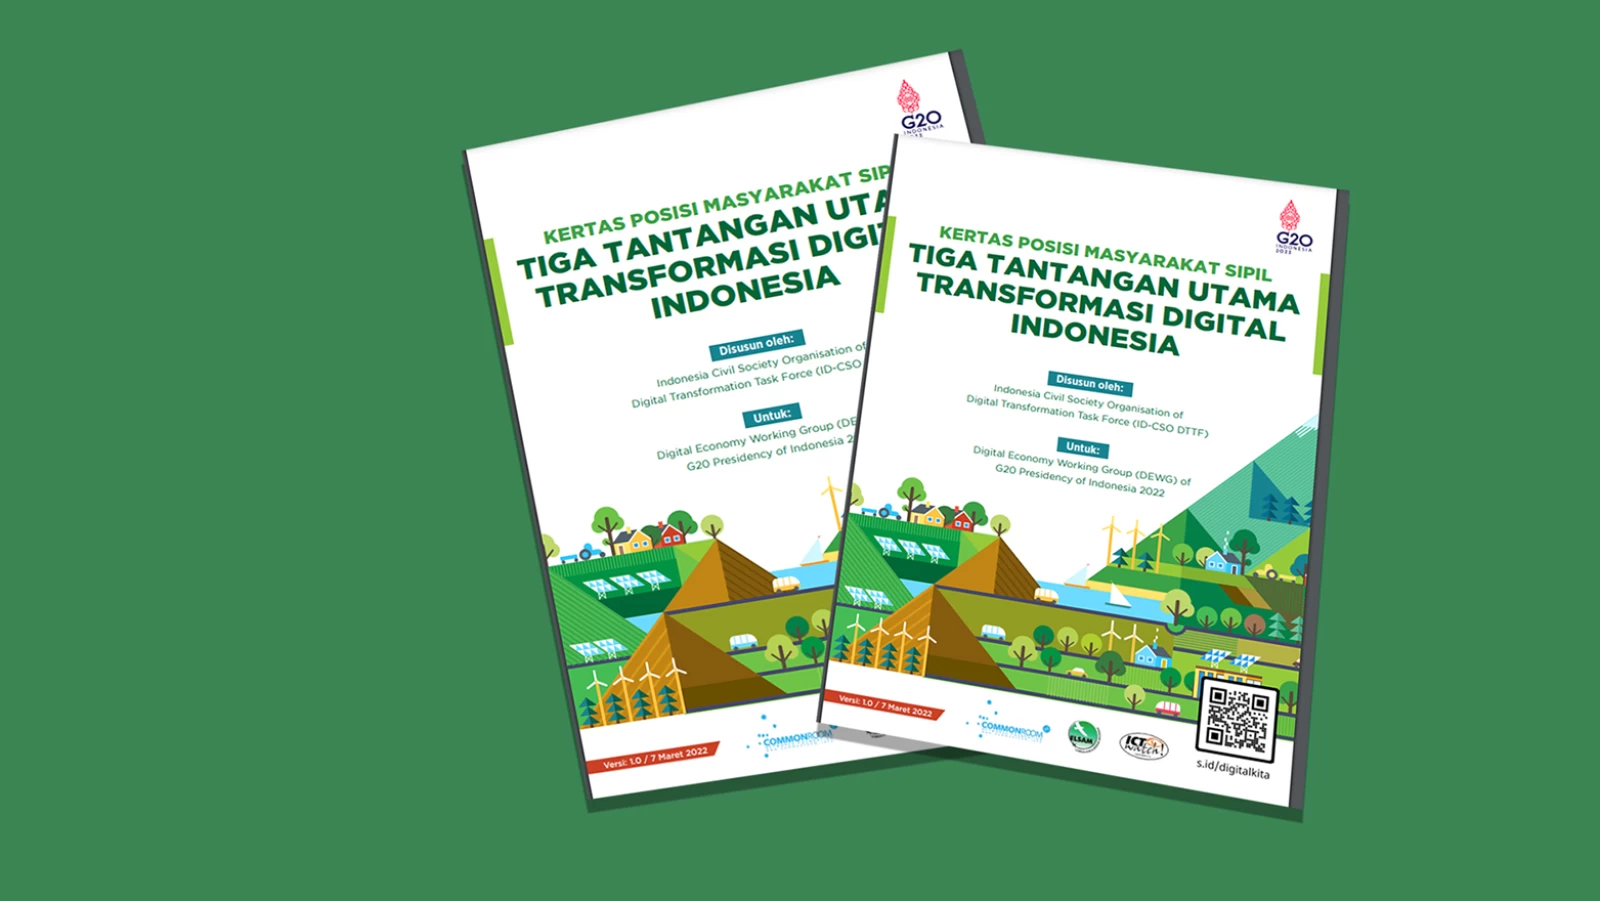 Dorong Transformasi Digital Presidensi G20, Pekerjaan Rumah Indonesia Mesti Serius Dikerjakan